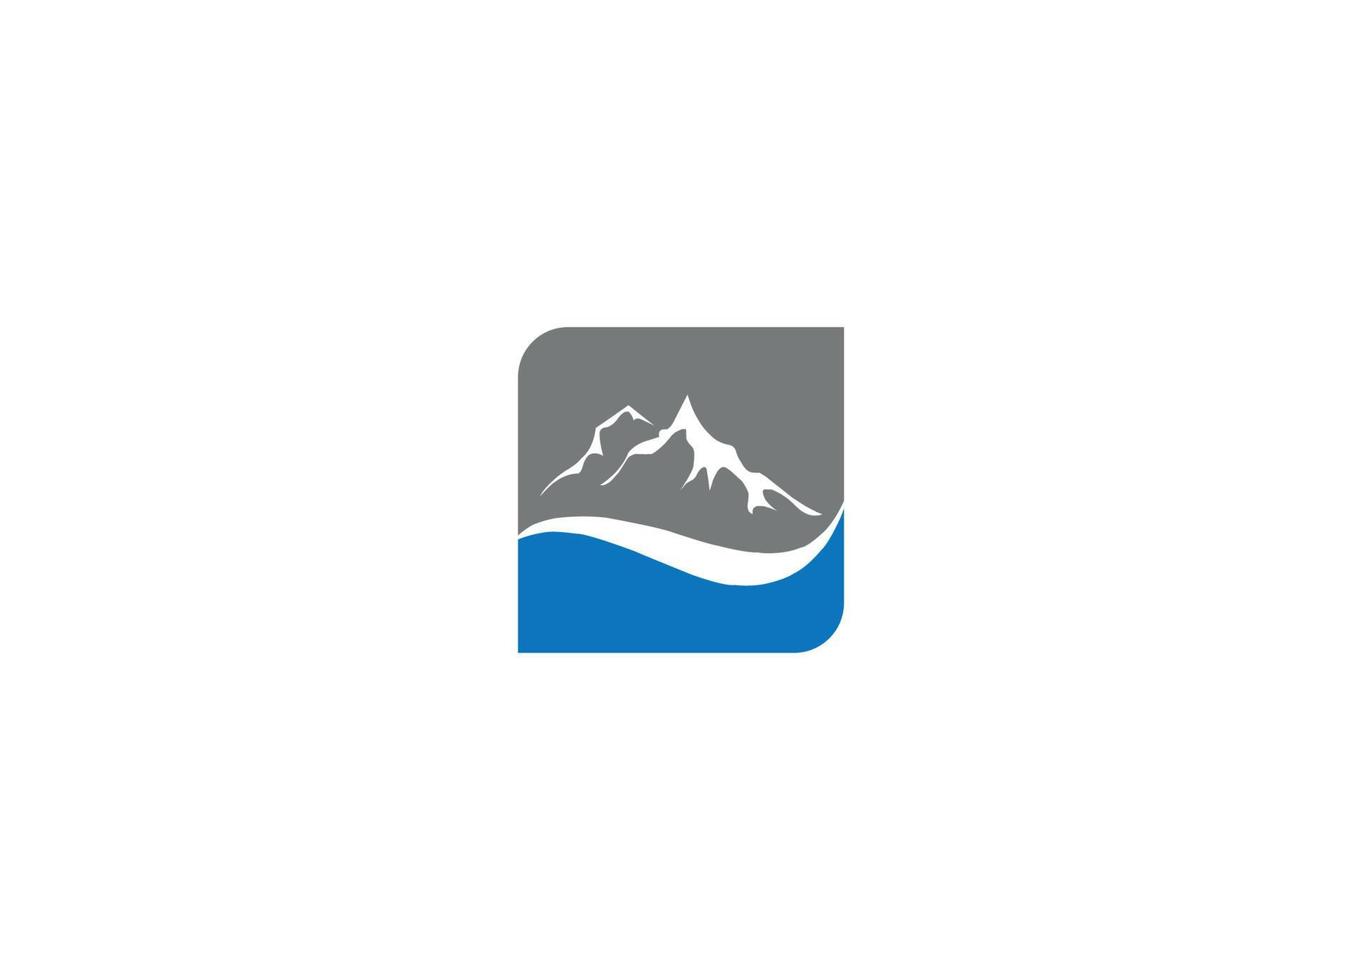 mountain modern logo design vector icon template